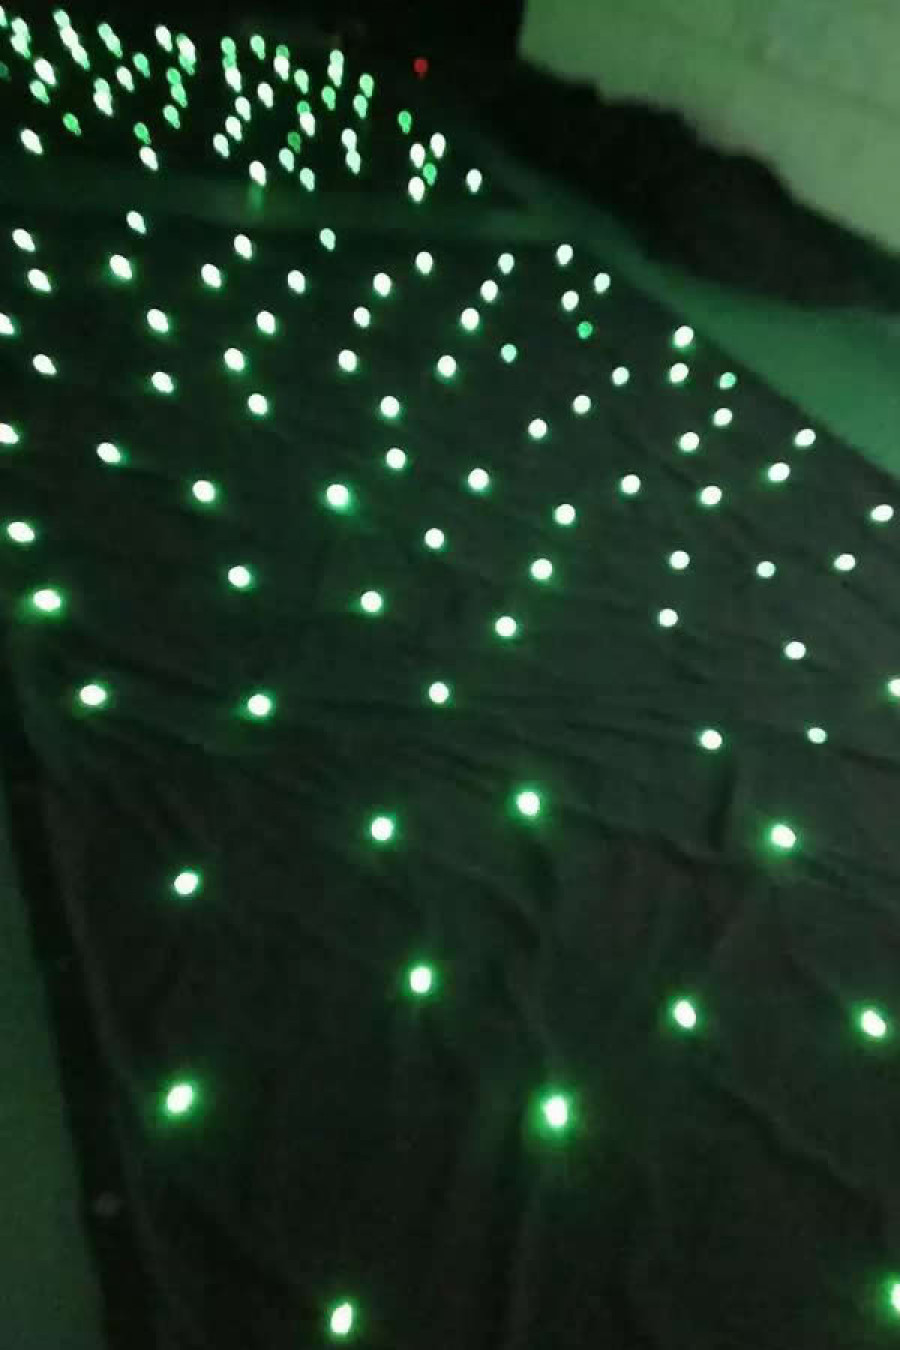 2*3M LED Tri Star Curtain,sparkliteled drape